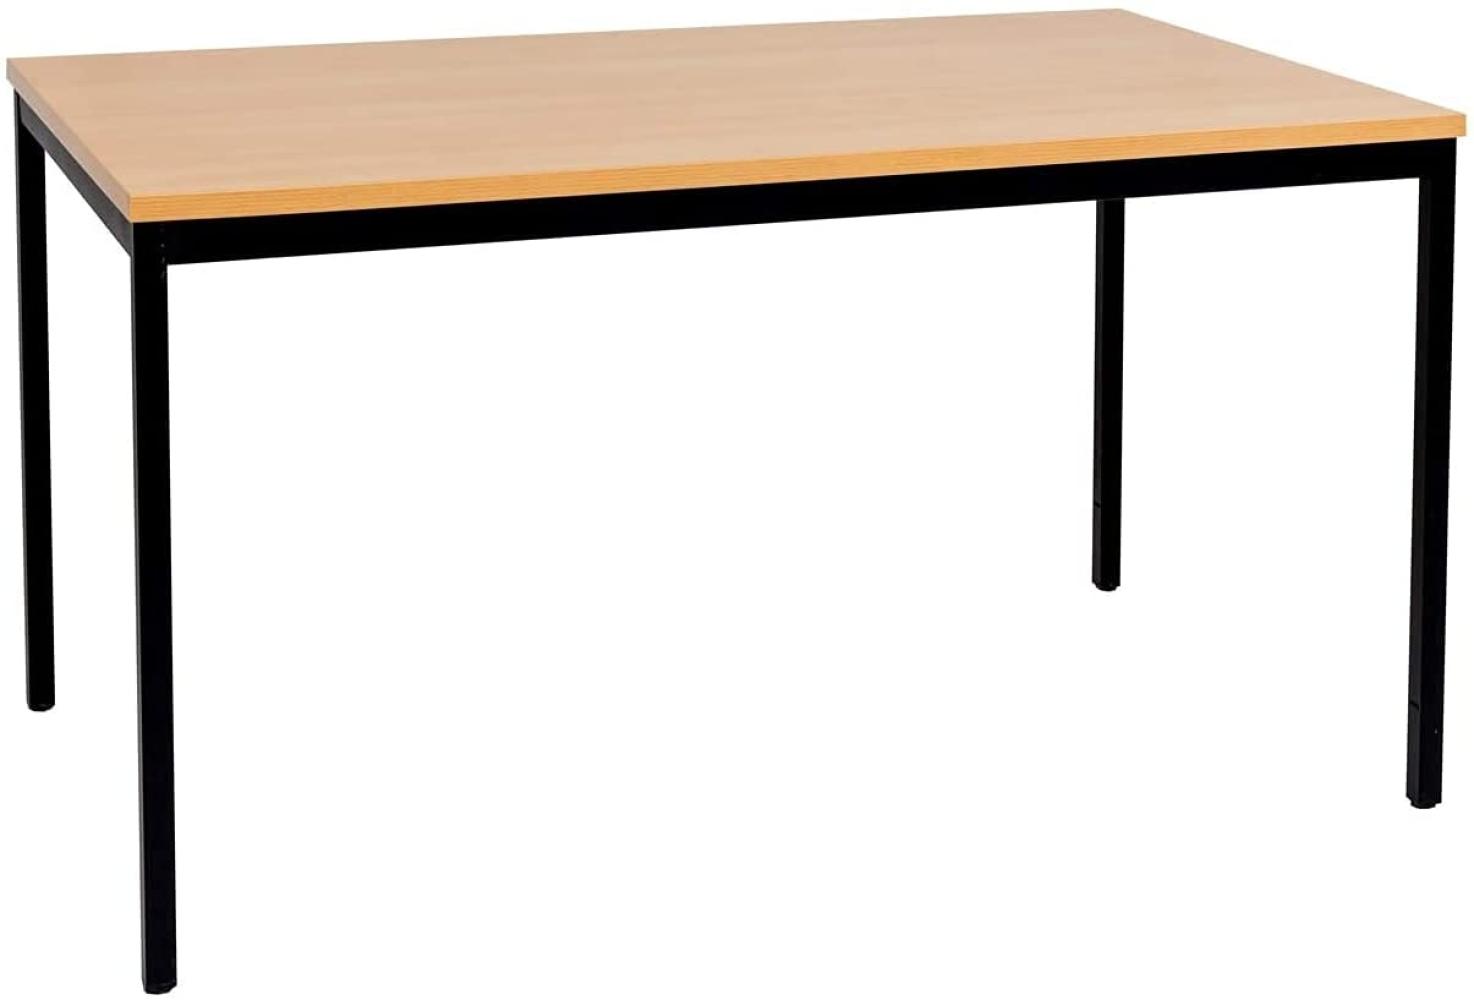 Furni24 Rechteckiger Universaltisch mit laminierter Platte Buche 120x80x75 cm, Metallgestell und niveauausgleichs Füßen, ideal im Homeoffice als Schreibtisch, Konferenztisch, Computertisch, Esstisch Bild 1